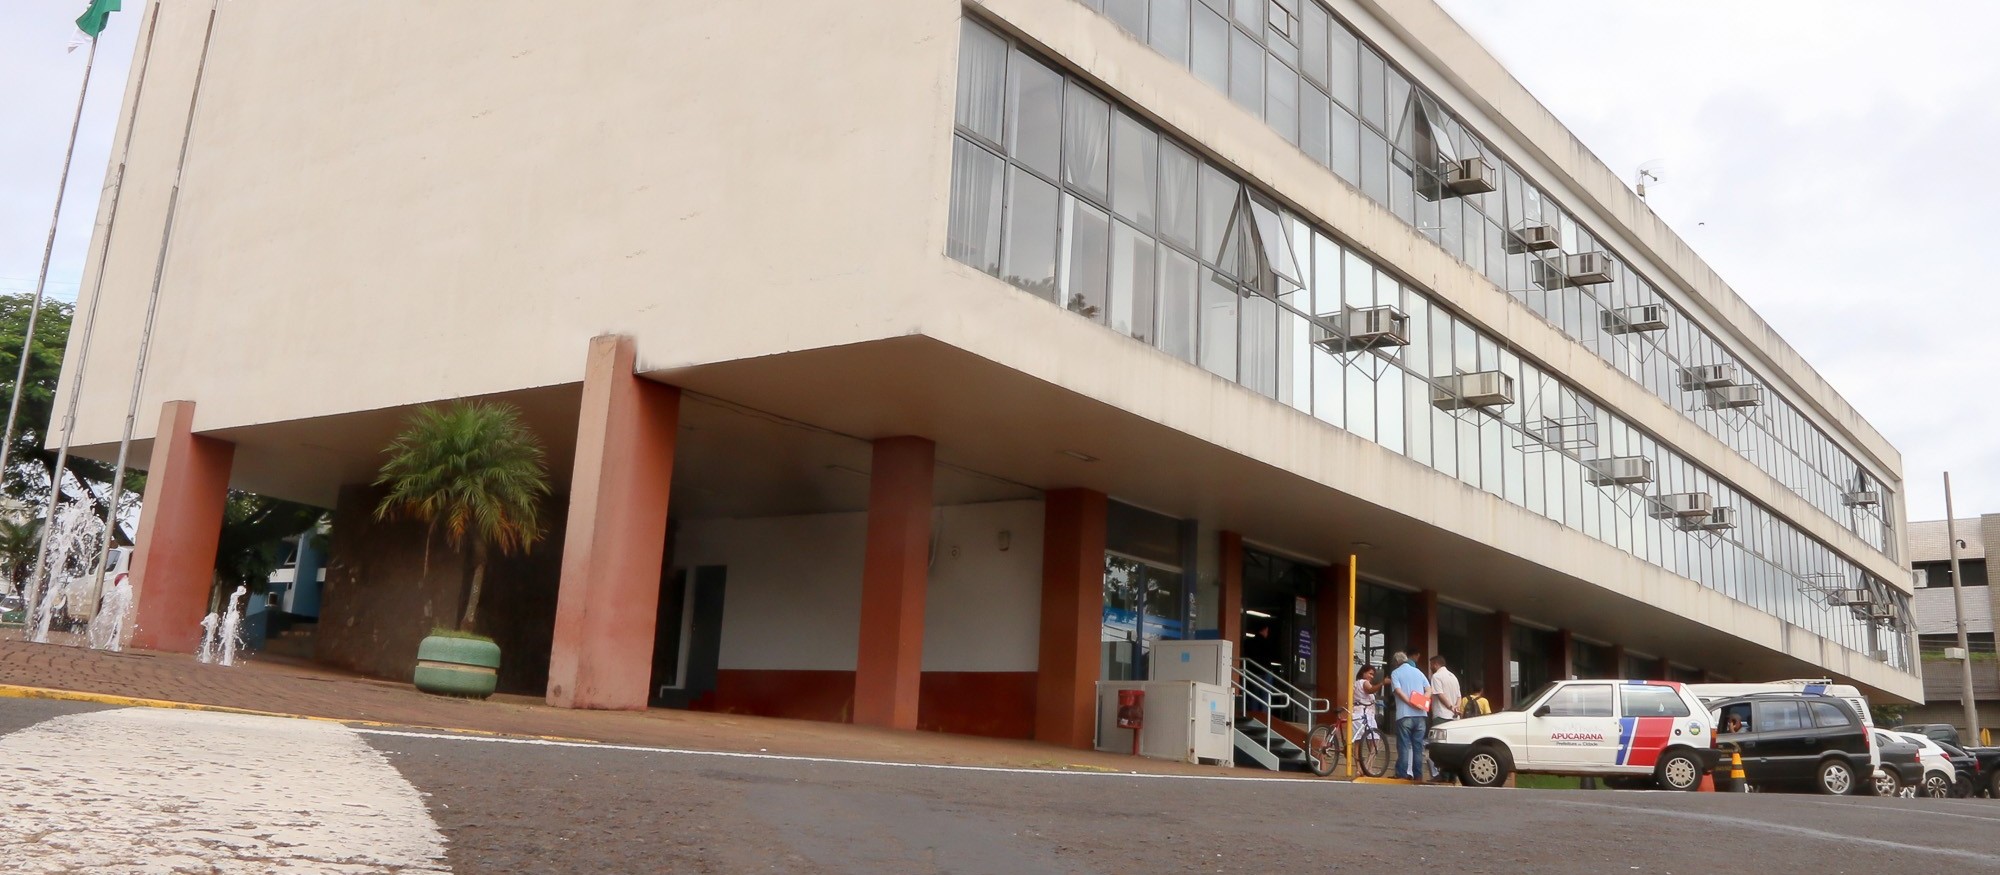 Prefeitura de Apucarana confirma surto de Covid-19 em secretarias municipais